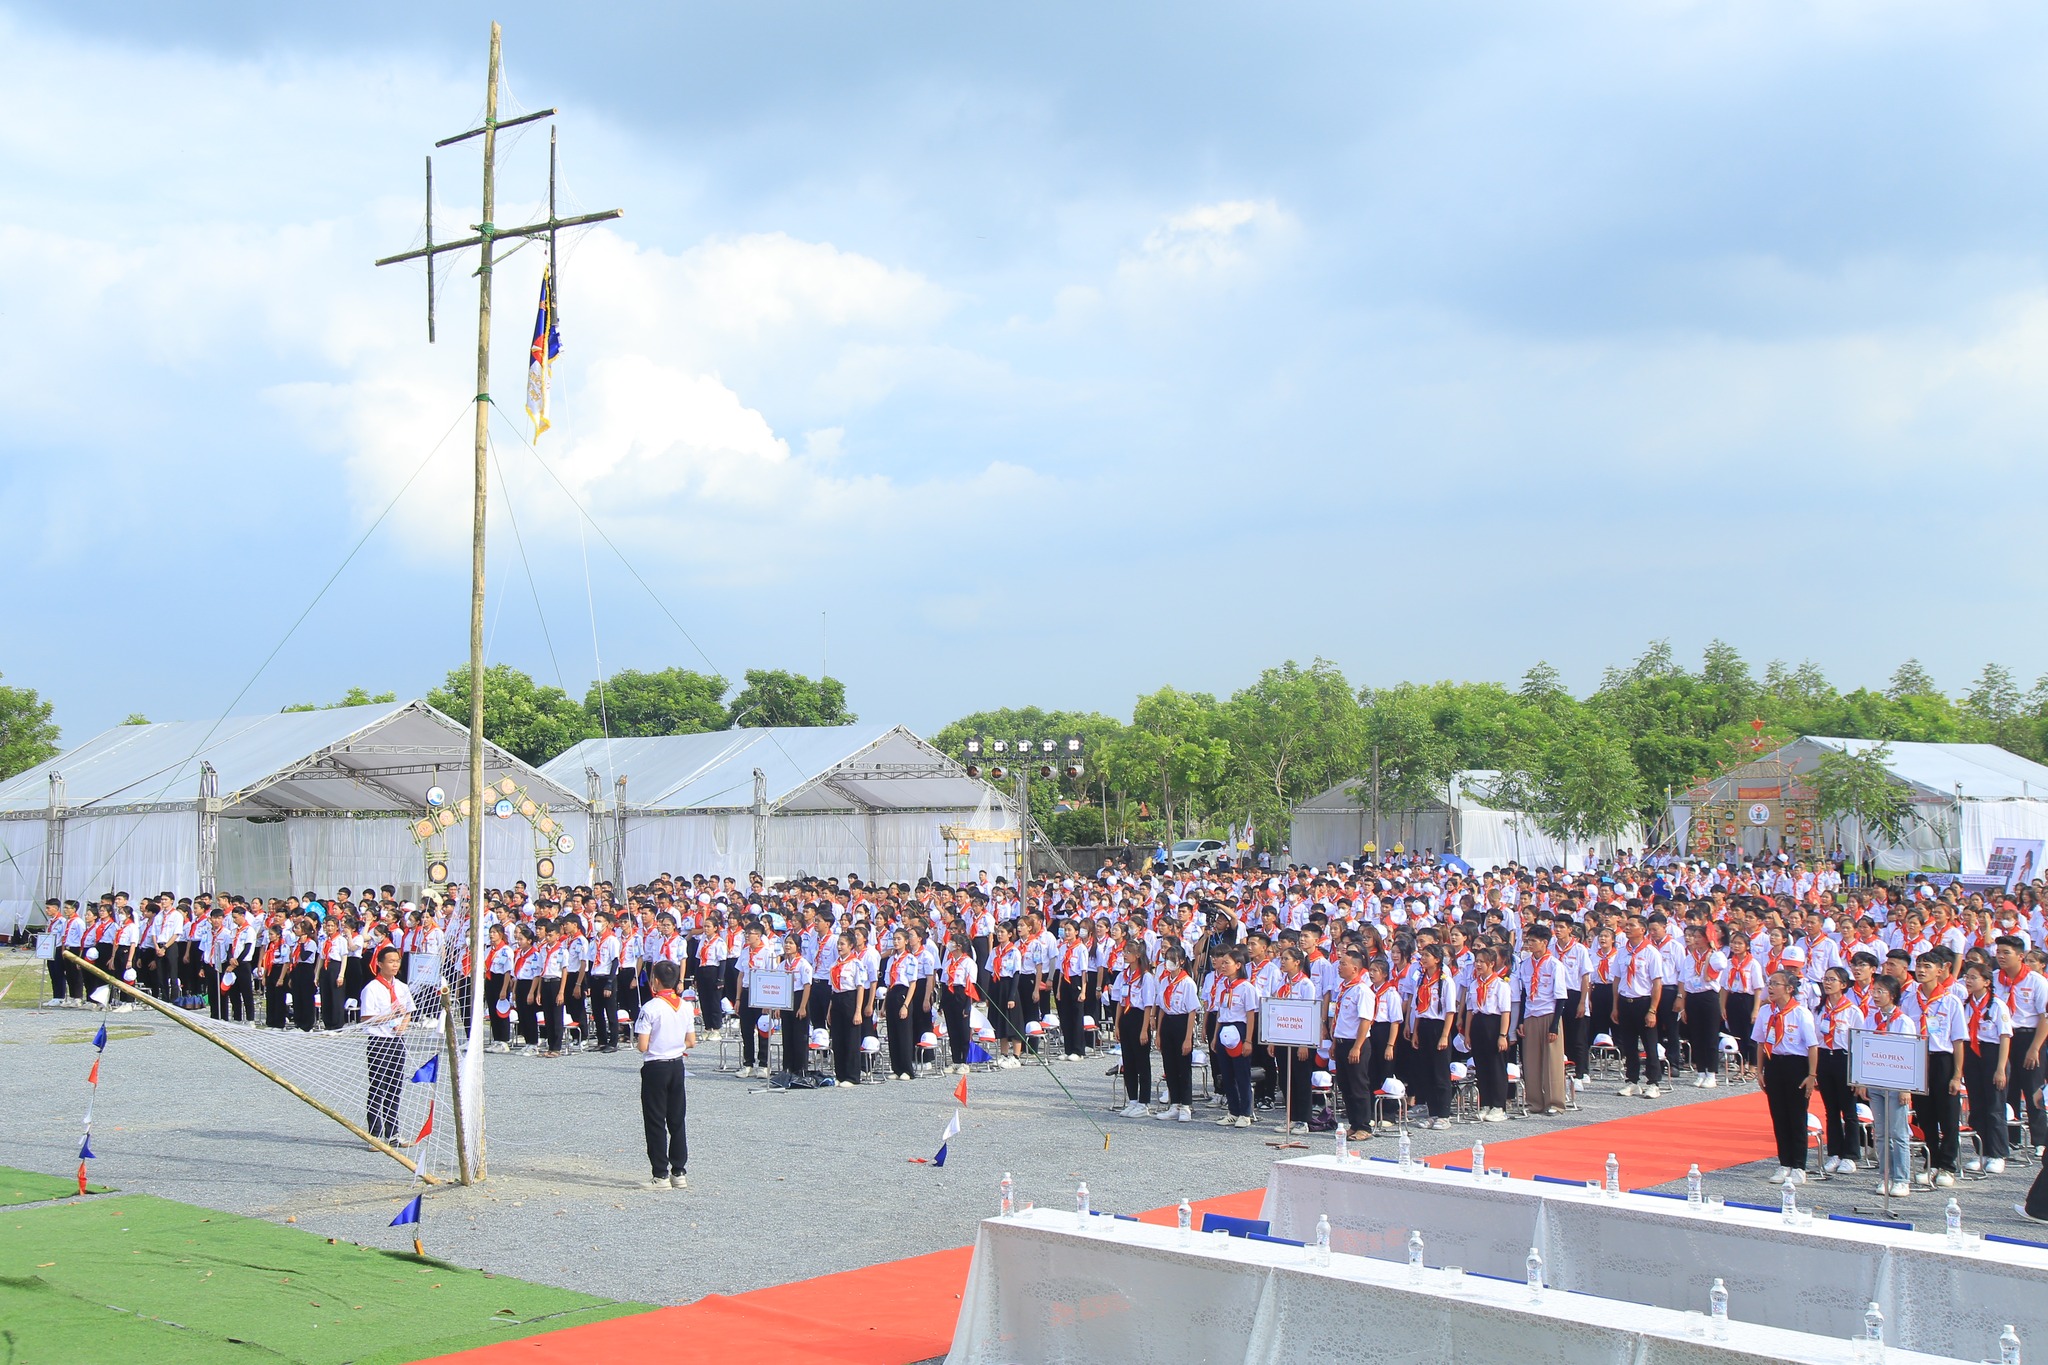 Phái đoàn Gp. Thái Bình tham dự Đại hội Huynh trưởng Giáo tỉnh Hà Nội “Xuất hành III”